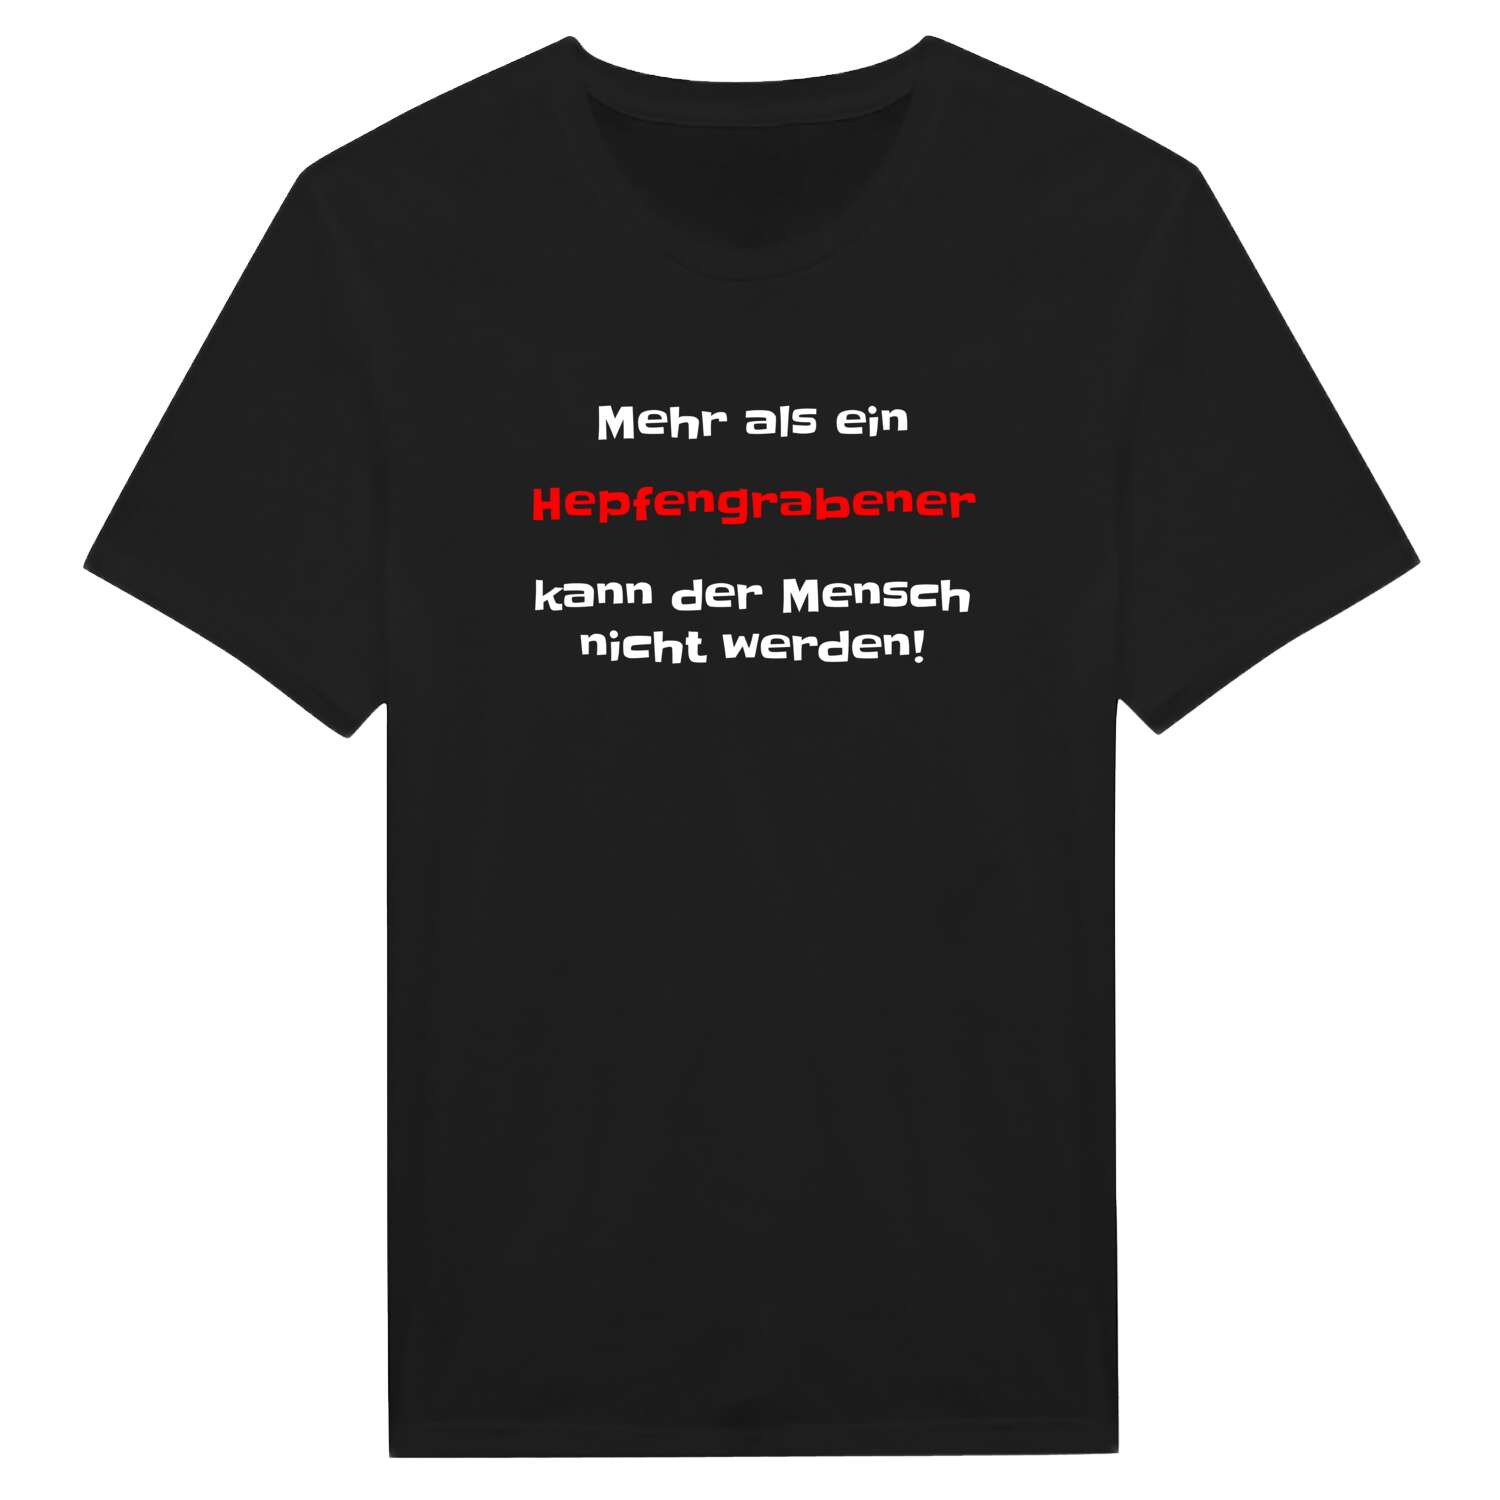 Hepfengraben T-Shirt »Mehr als ein«